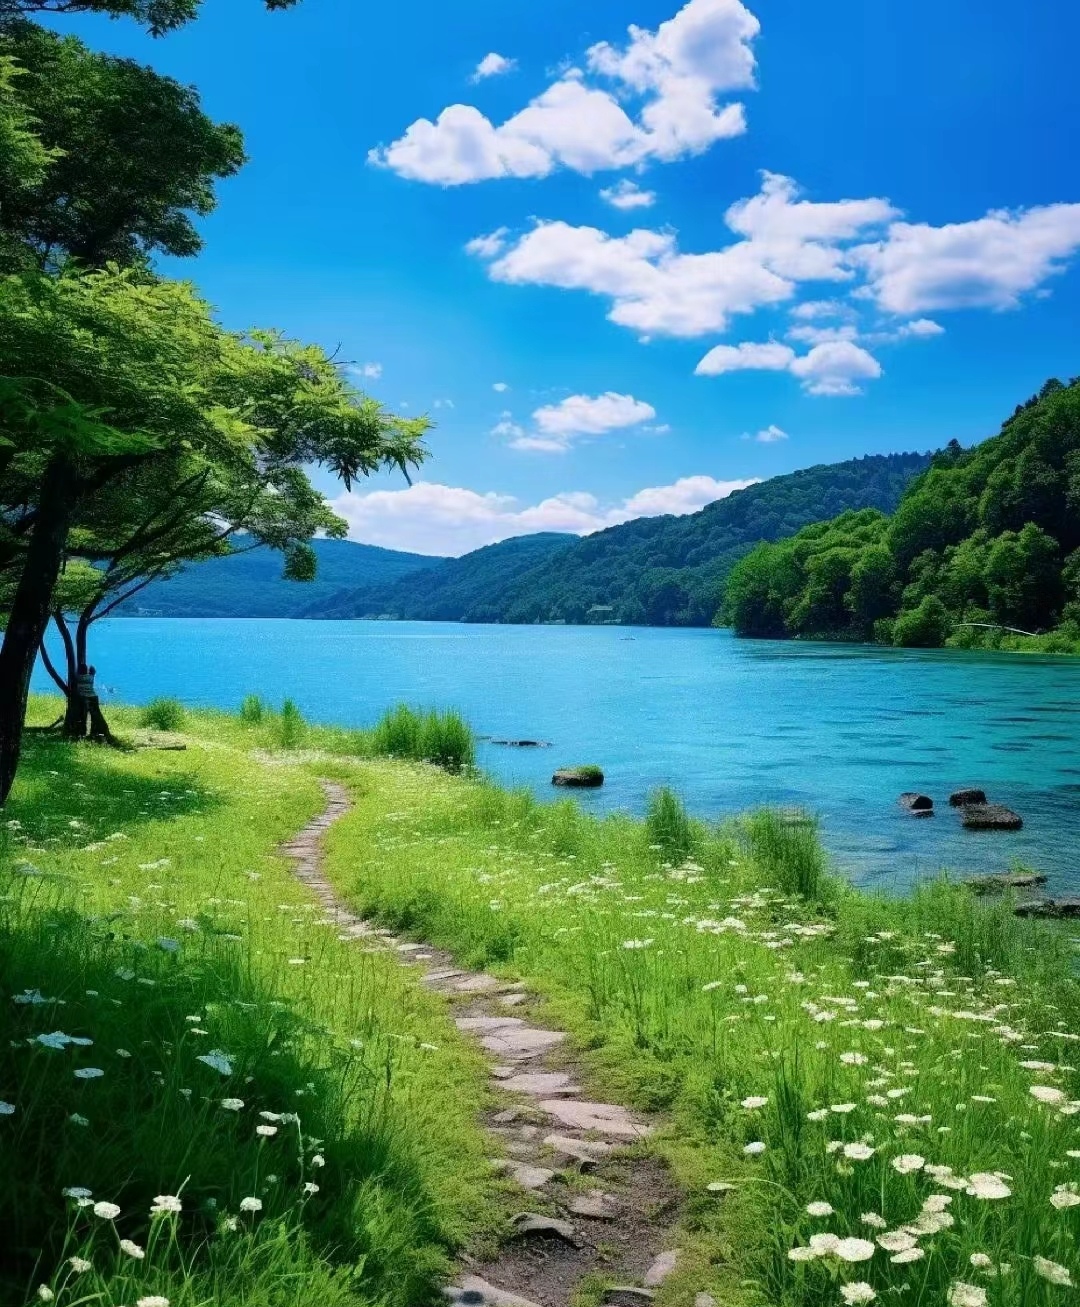 清澈的湖水映衬着蓝天白云,被五颜六色的花朵簇拥着